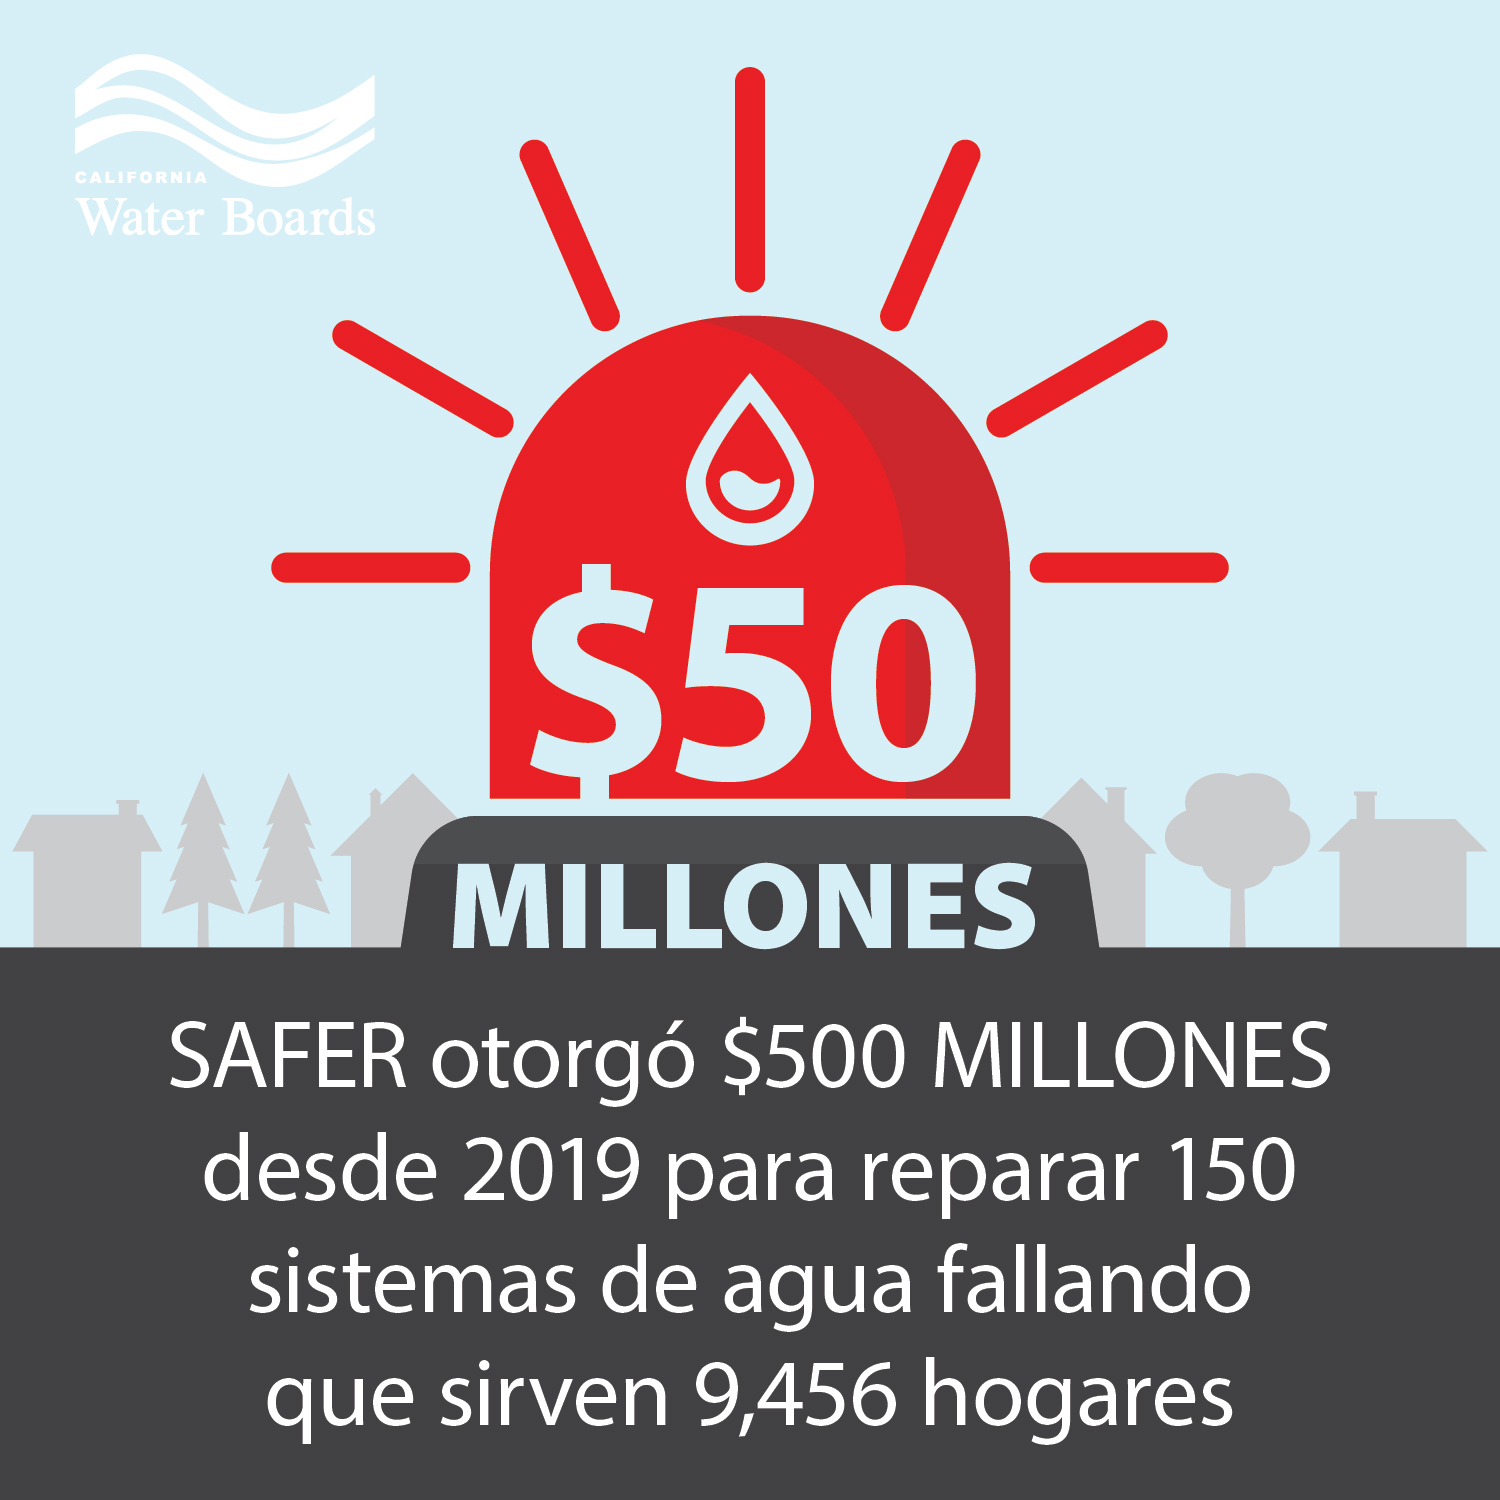 SAFER otorgó $500 millones desde 2019 para reparar 150 sistemas de agua fallando que sirven 9,456 hogares